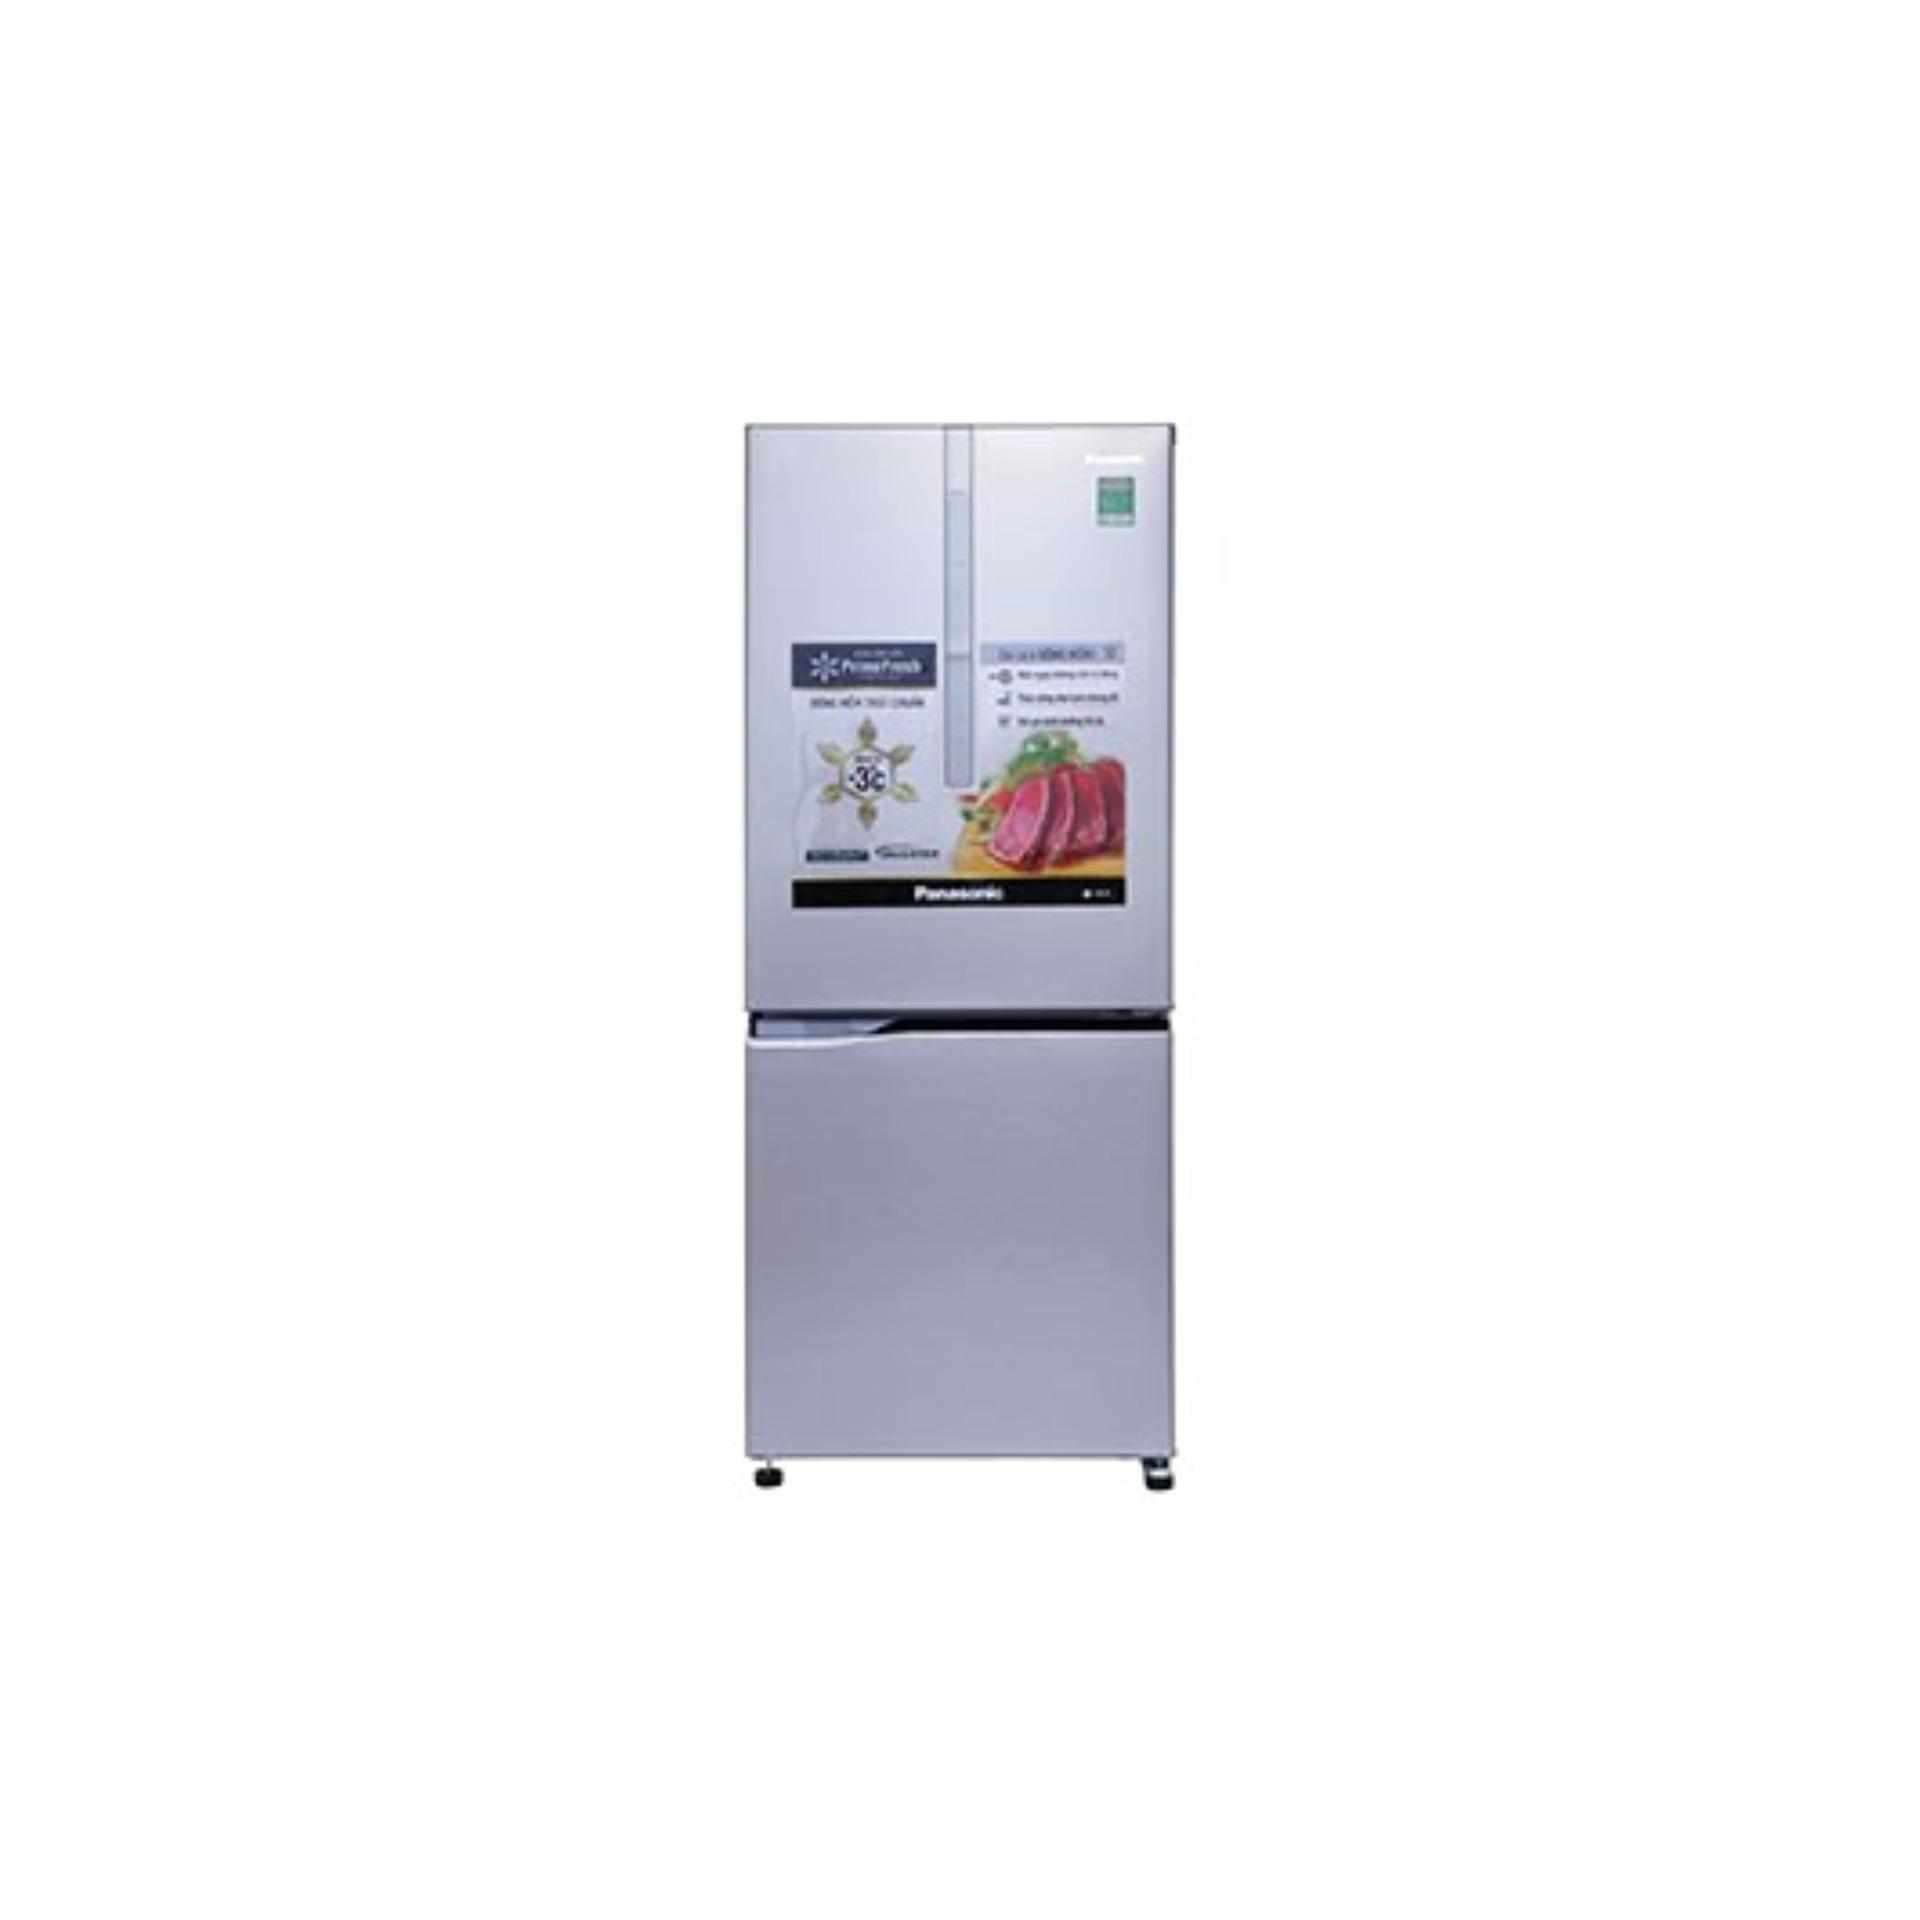 Tủ lạnh Panasonic NR-BV289XSVN